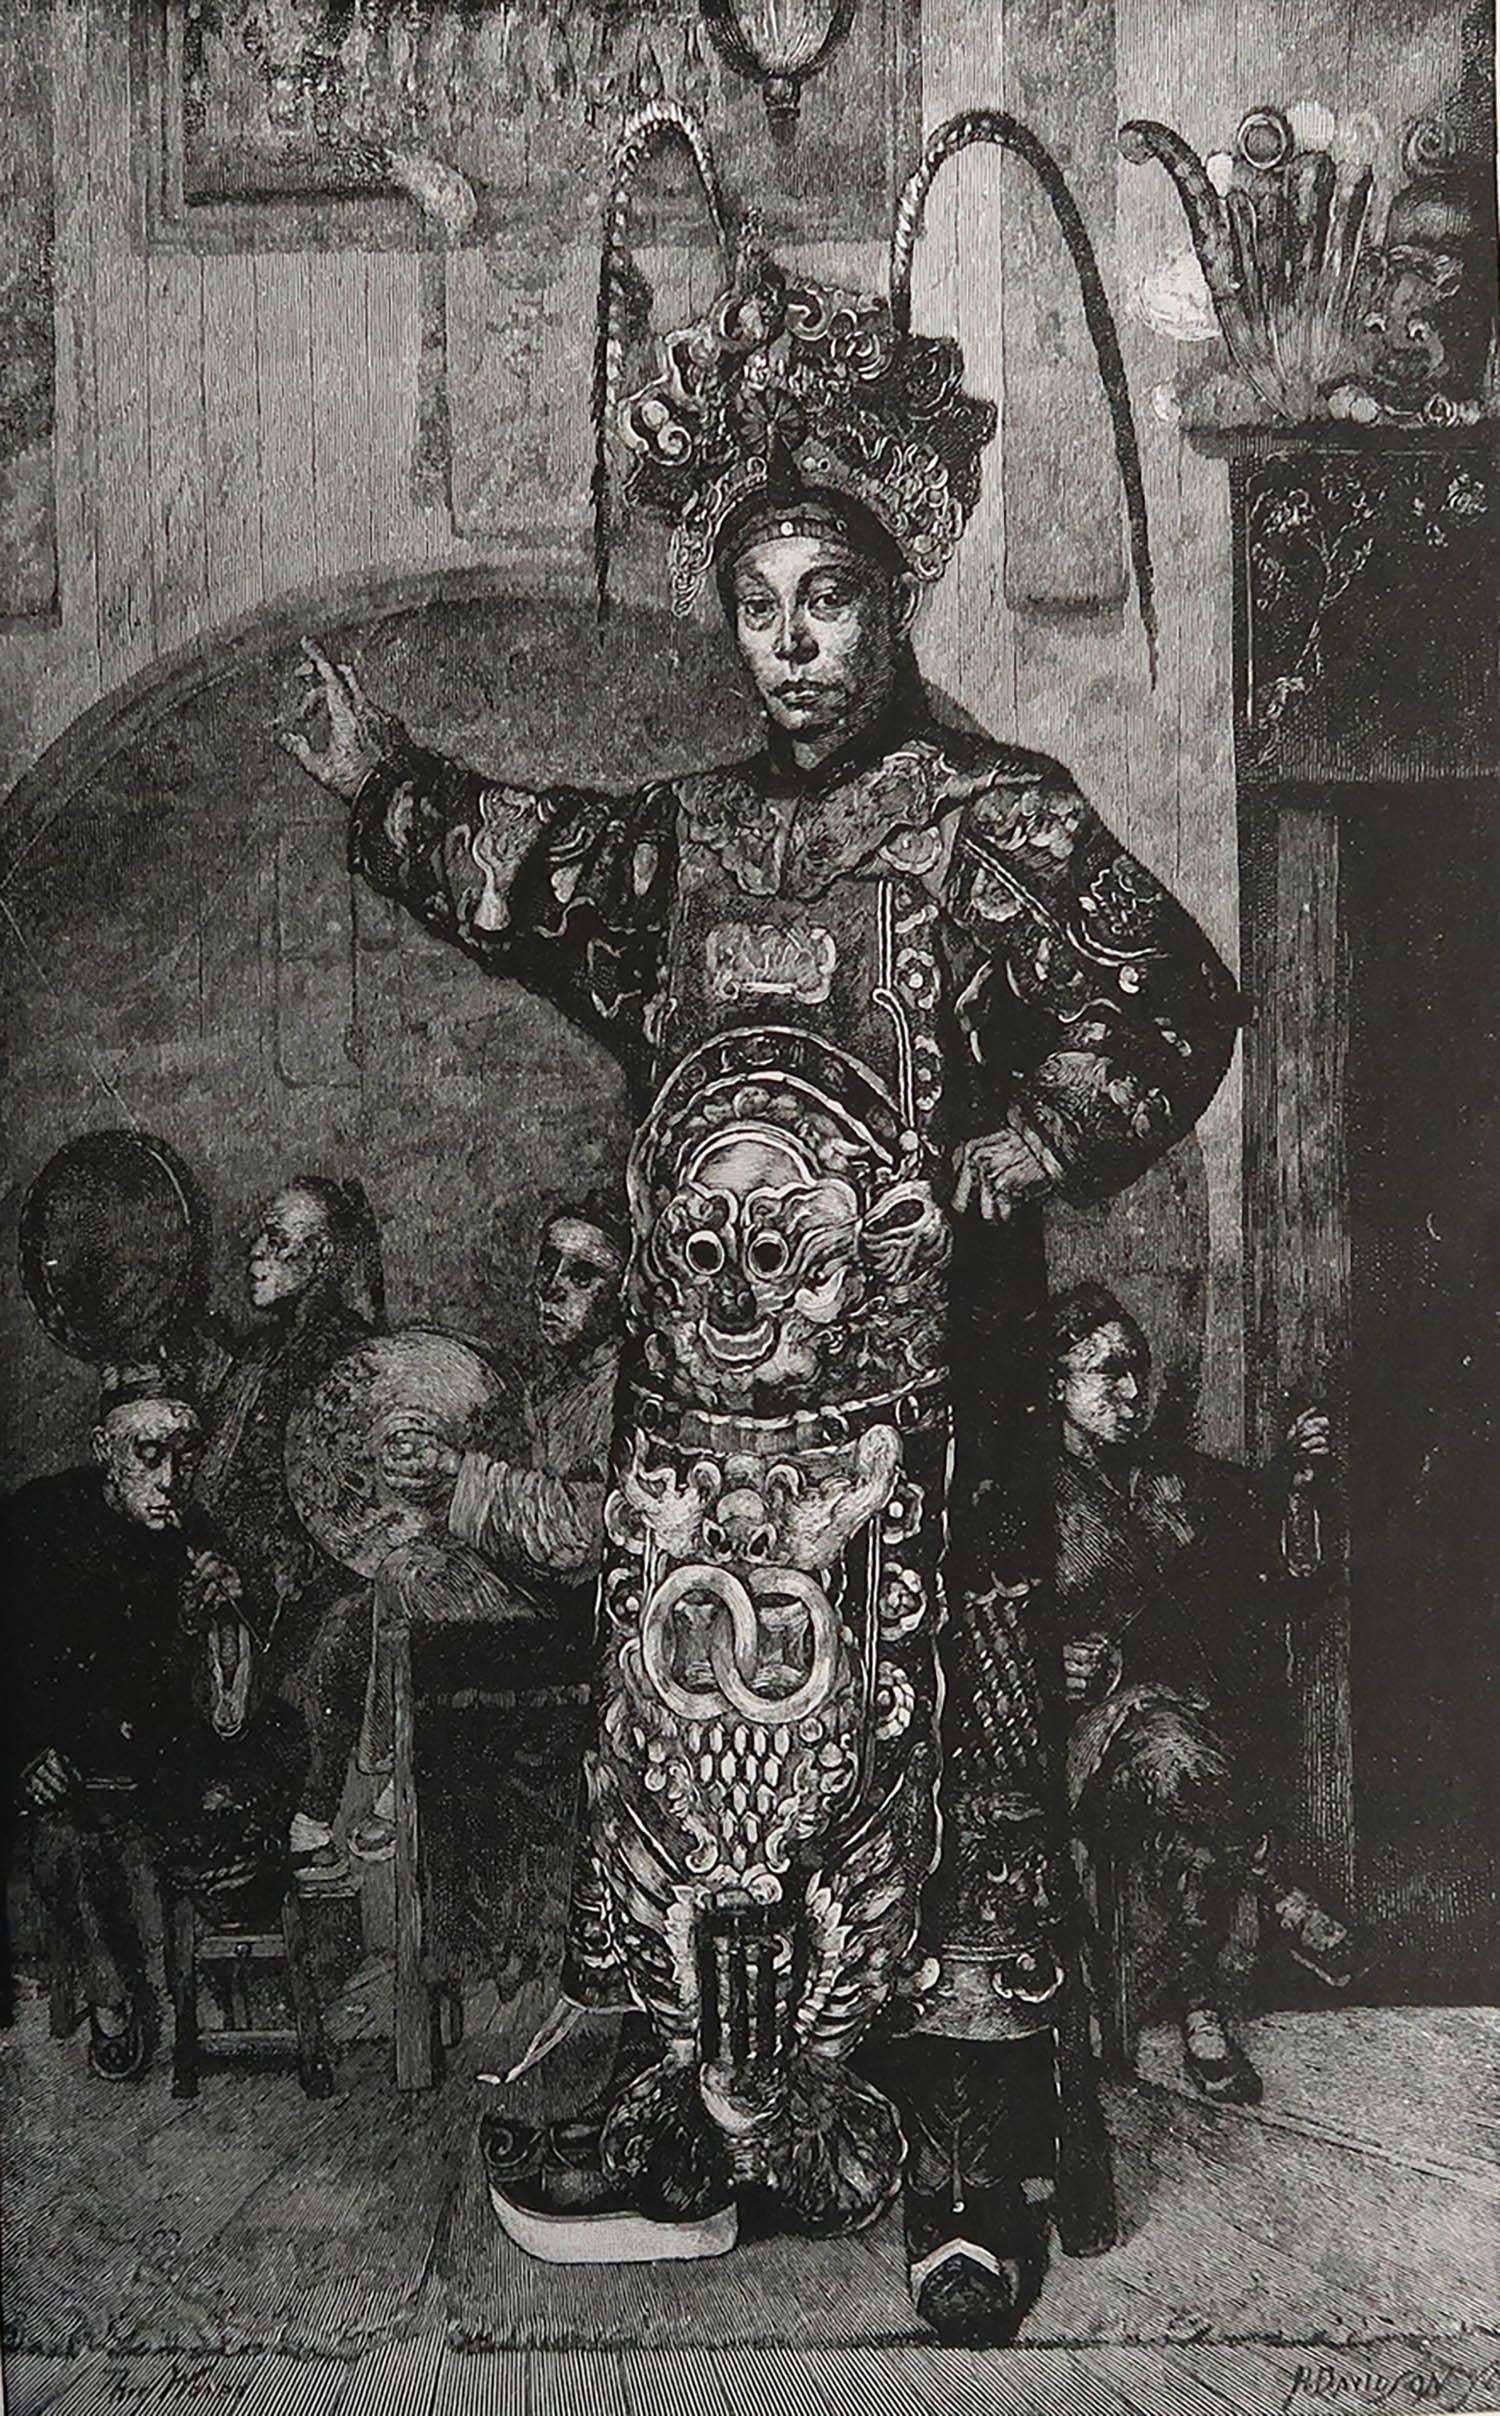 Superbe image d'un acteur chinois dans le théâtre de San Francisco.

Gravure sur bois

Texte au verso

Publié vers 1890



Livraison gratuite.




